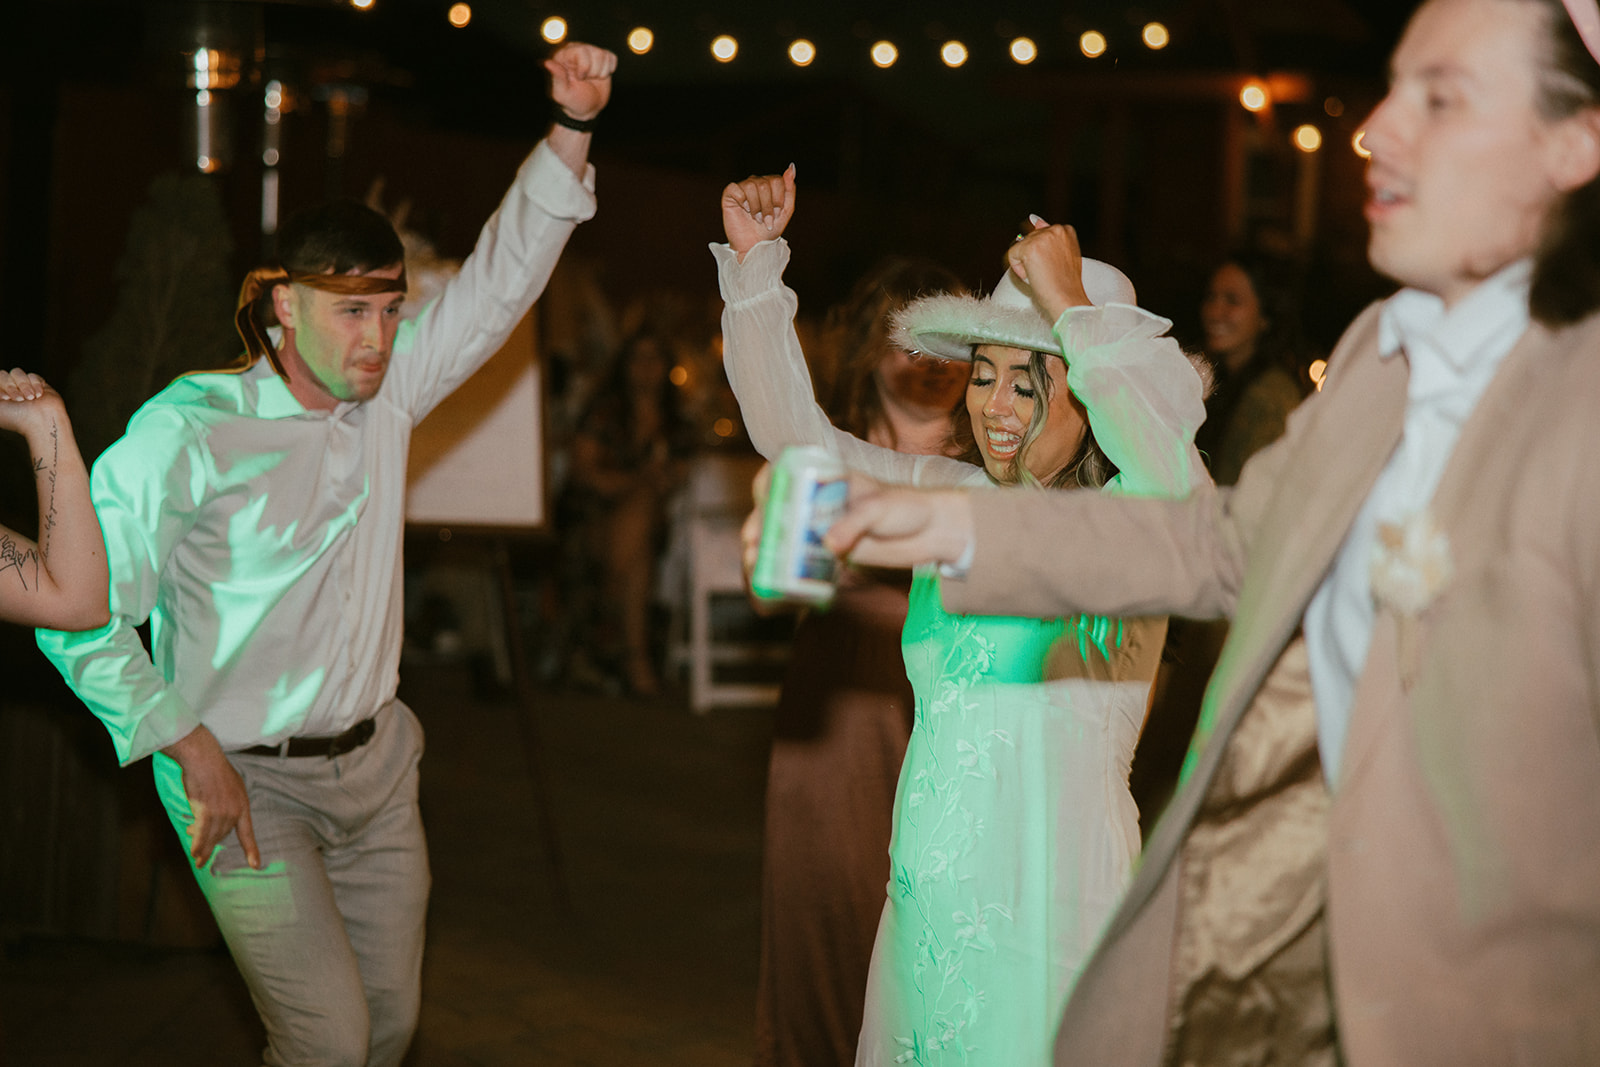 Bride dancing during reception